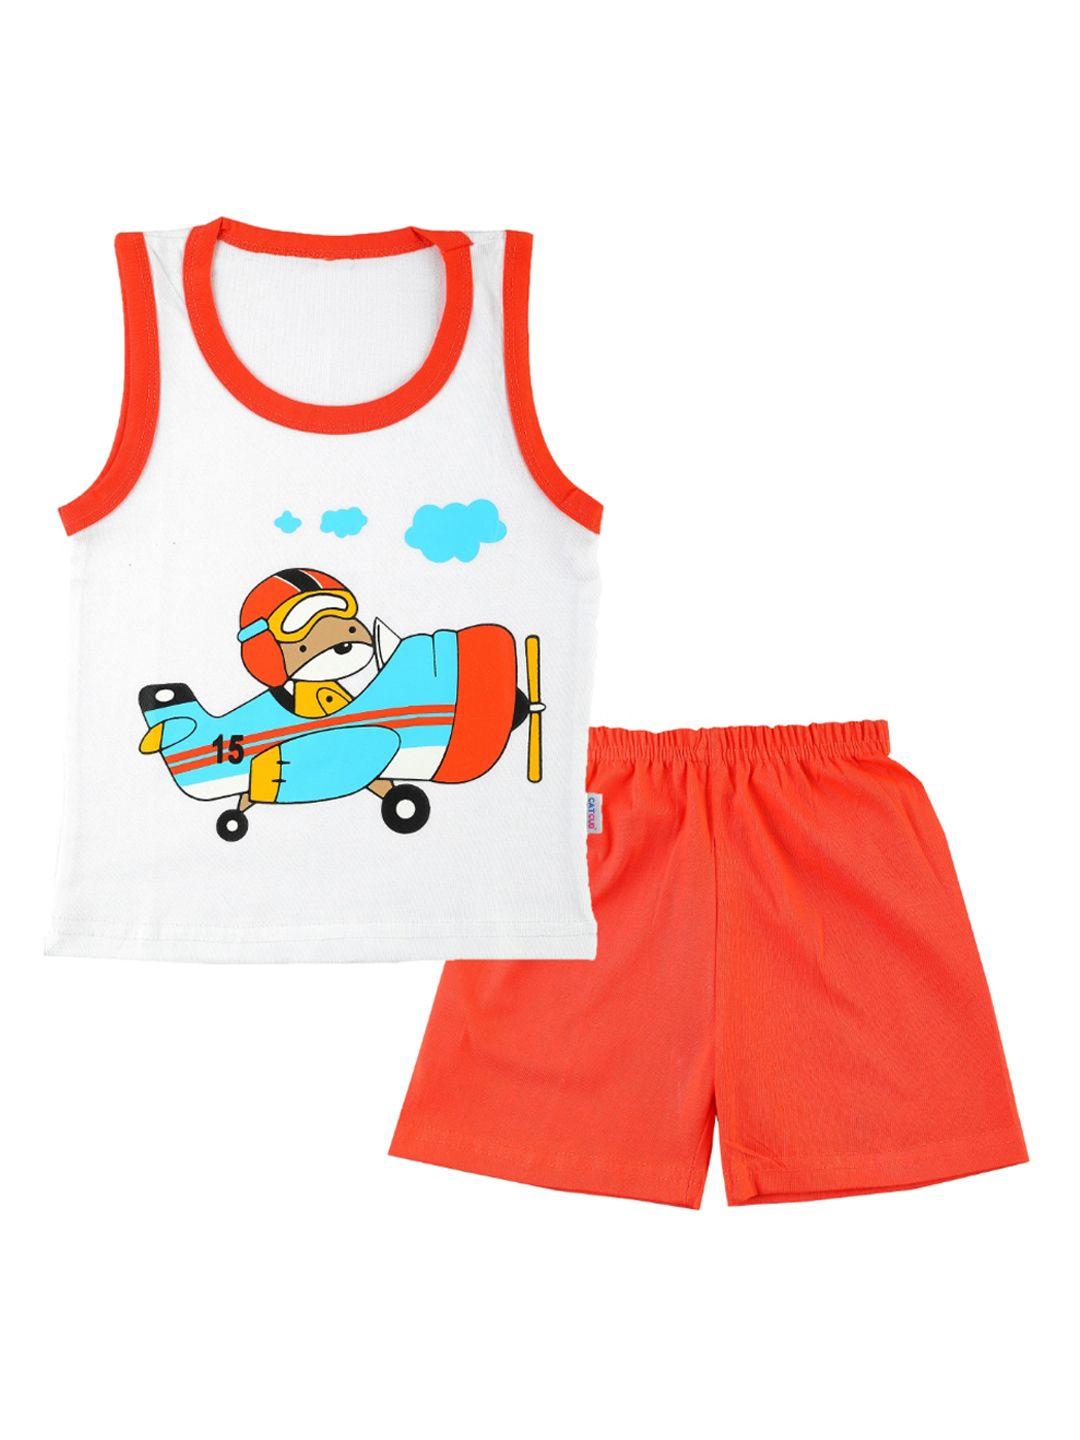 catcub unisex kids orange clothing set